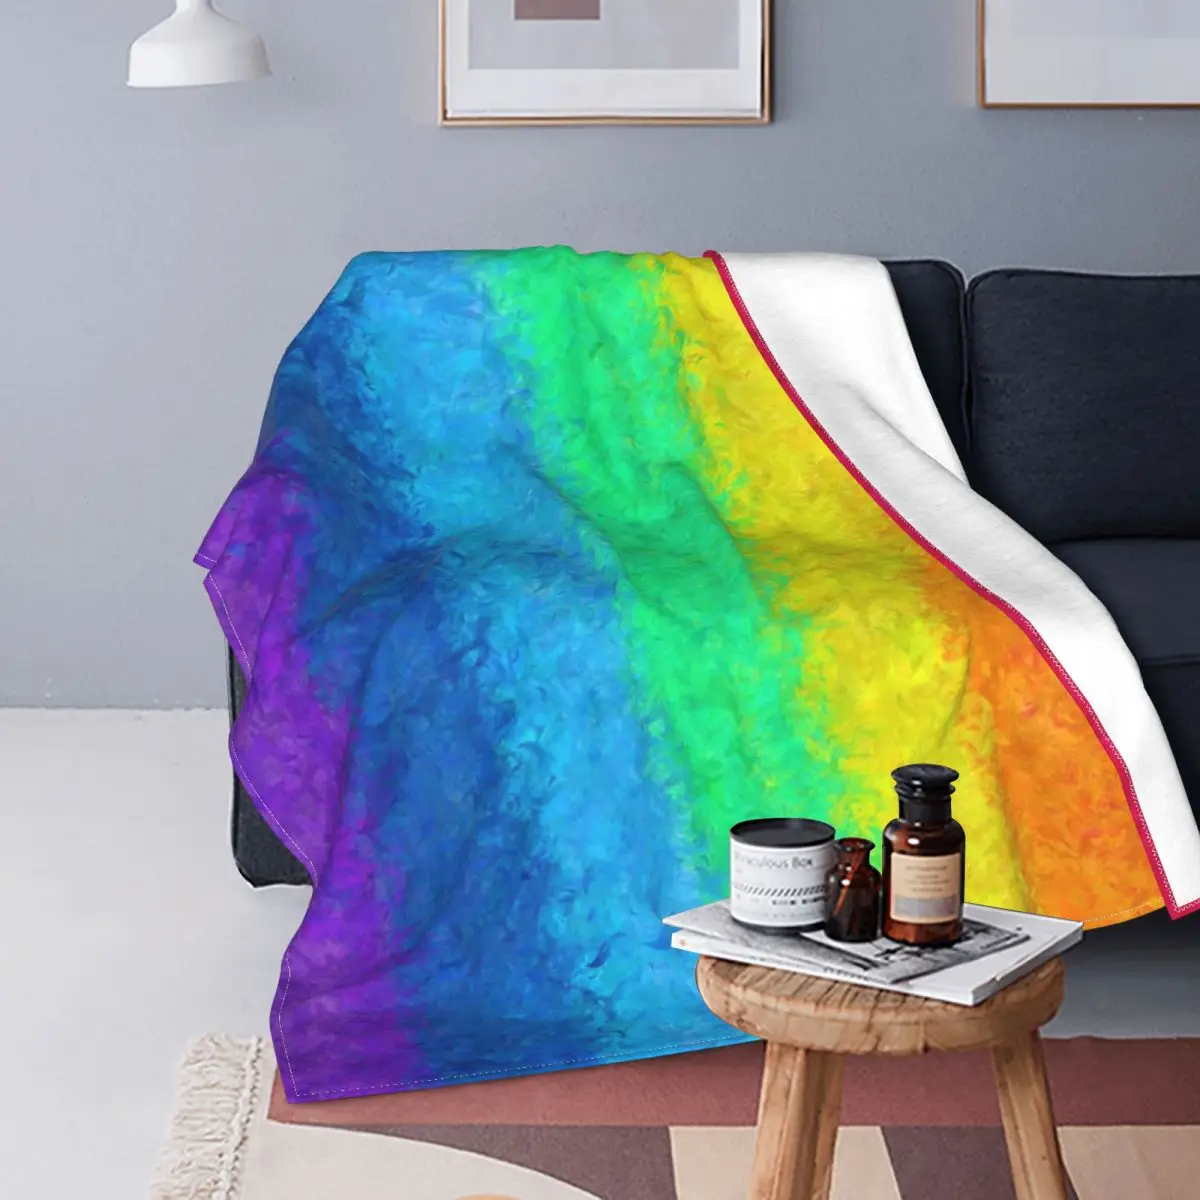 

Фланелевое Одеяло с радужным рисунком, многофункциональное ультрамягкое летнее покрывало s для кровати, путешествий, постельное белье